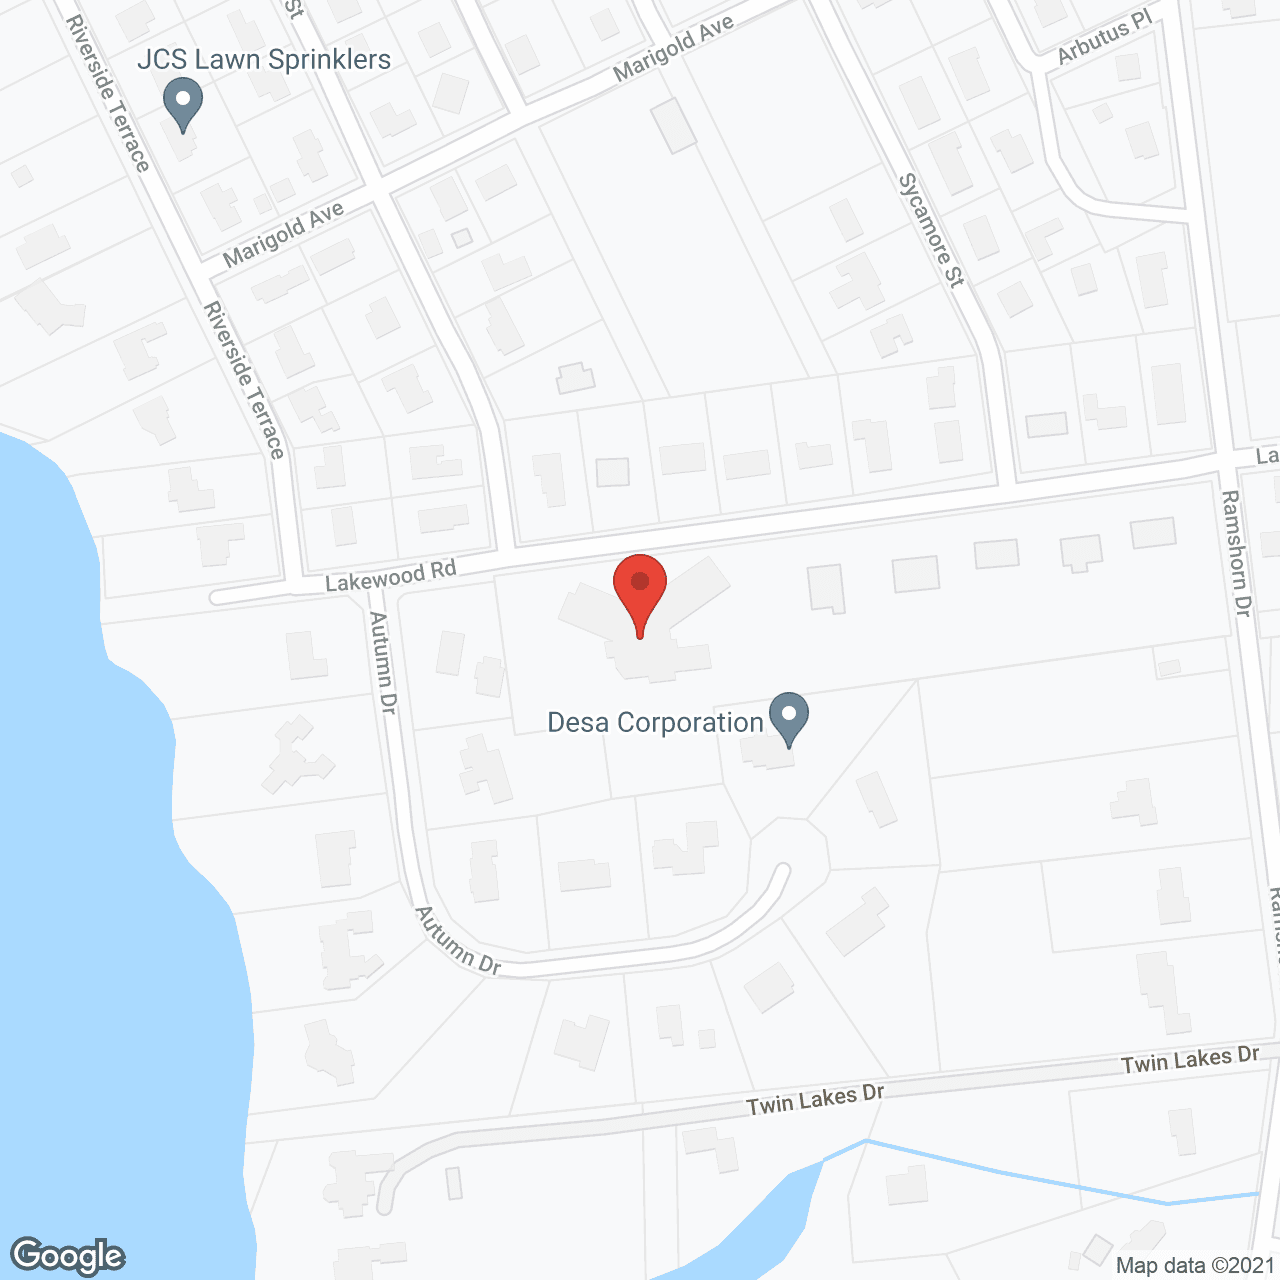 Sunnyside Nursing Home in google map